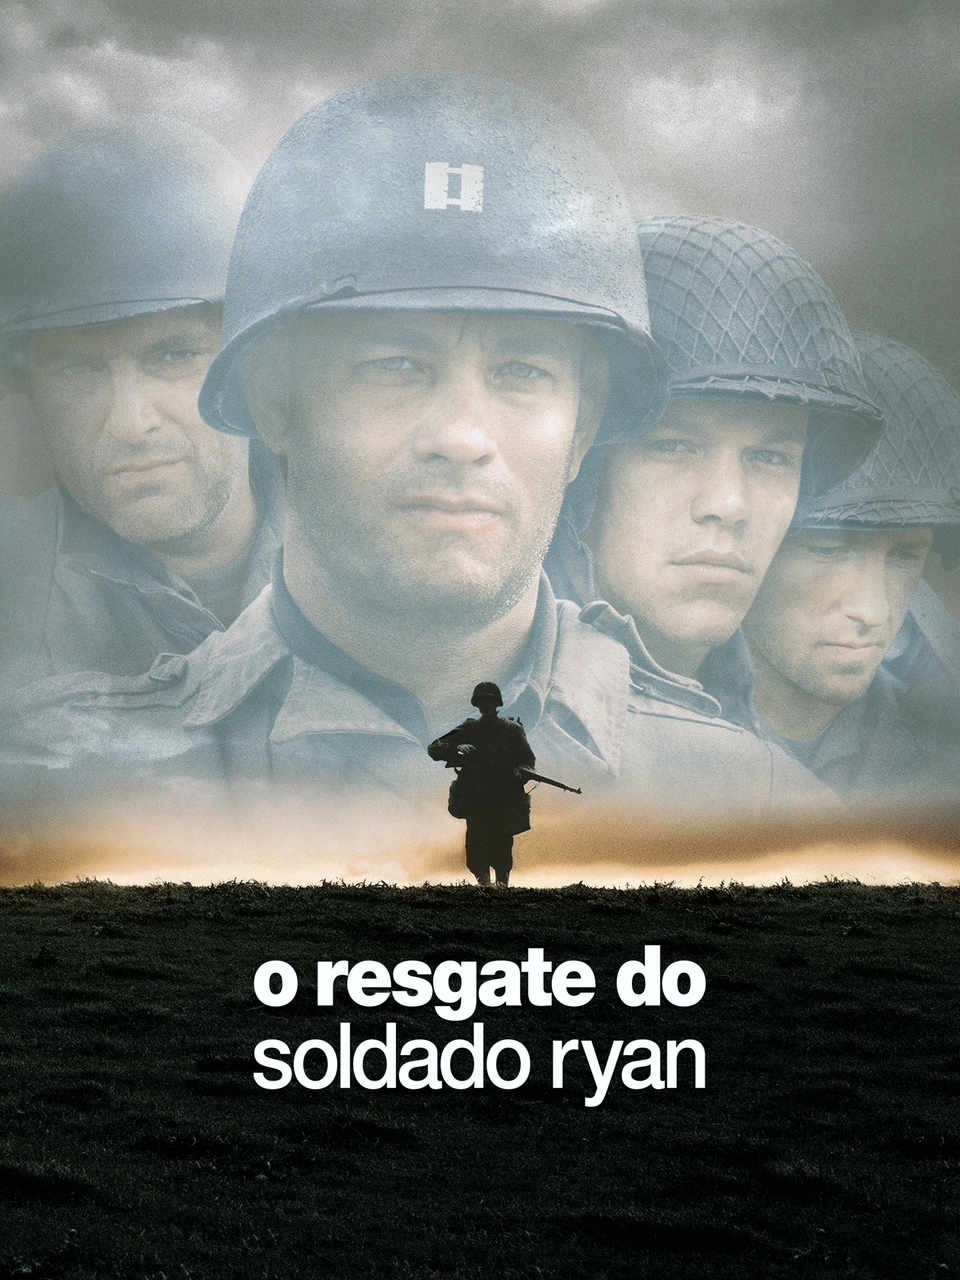 O resgate do soldado Ryan (1998): Dirigido por Steven Spielberg, ganhou em diversas categorias no Oscar, Globo de Ouro, BAFTA, Grammy, MTV Movie Awards, e o Prêmio César.  Reprodução: Flipar